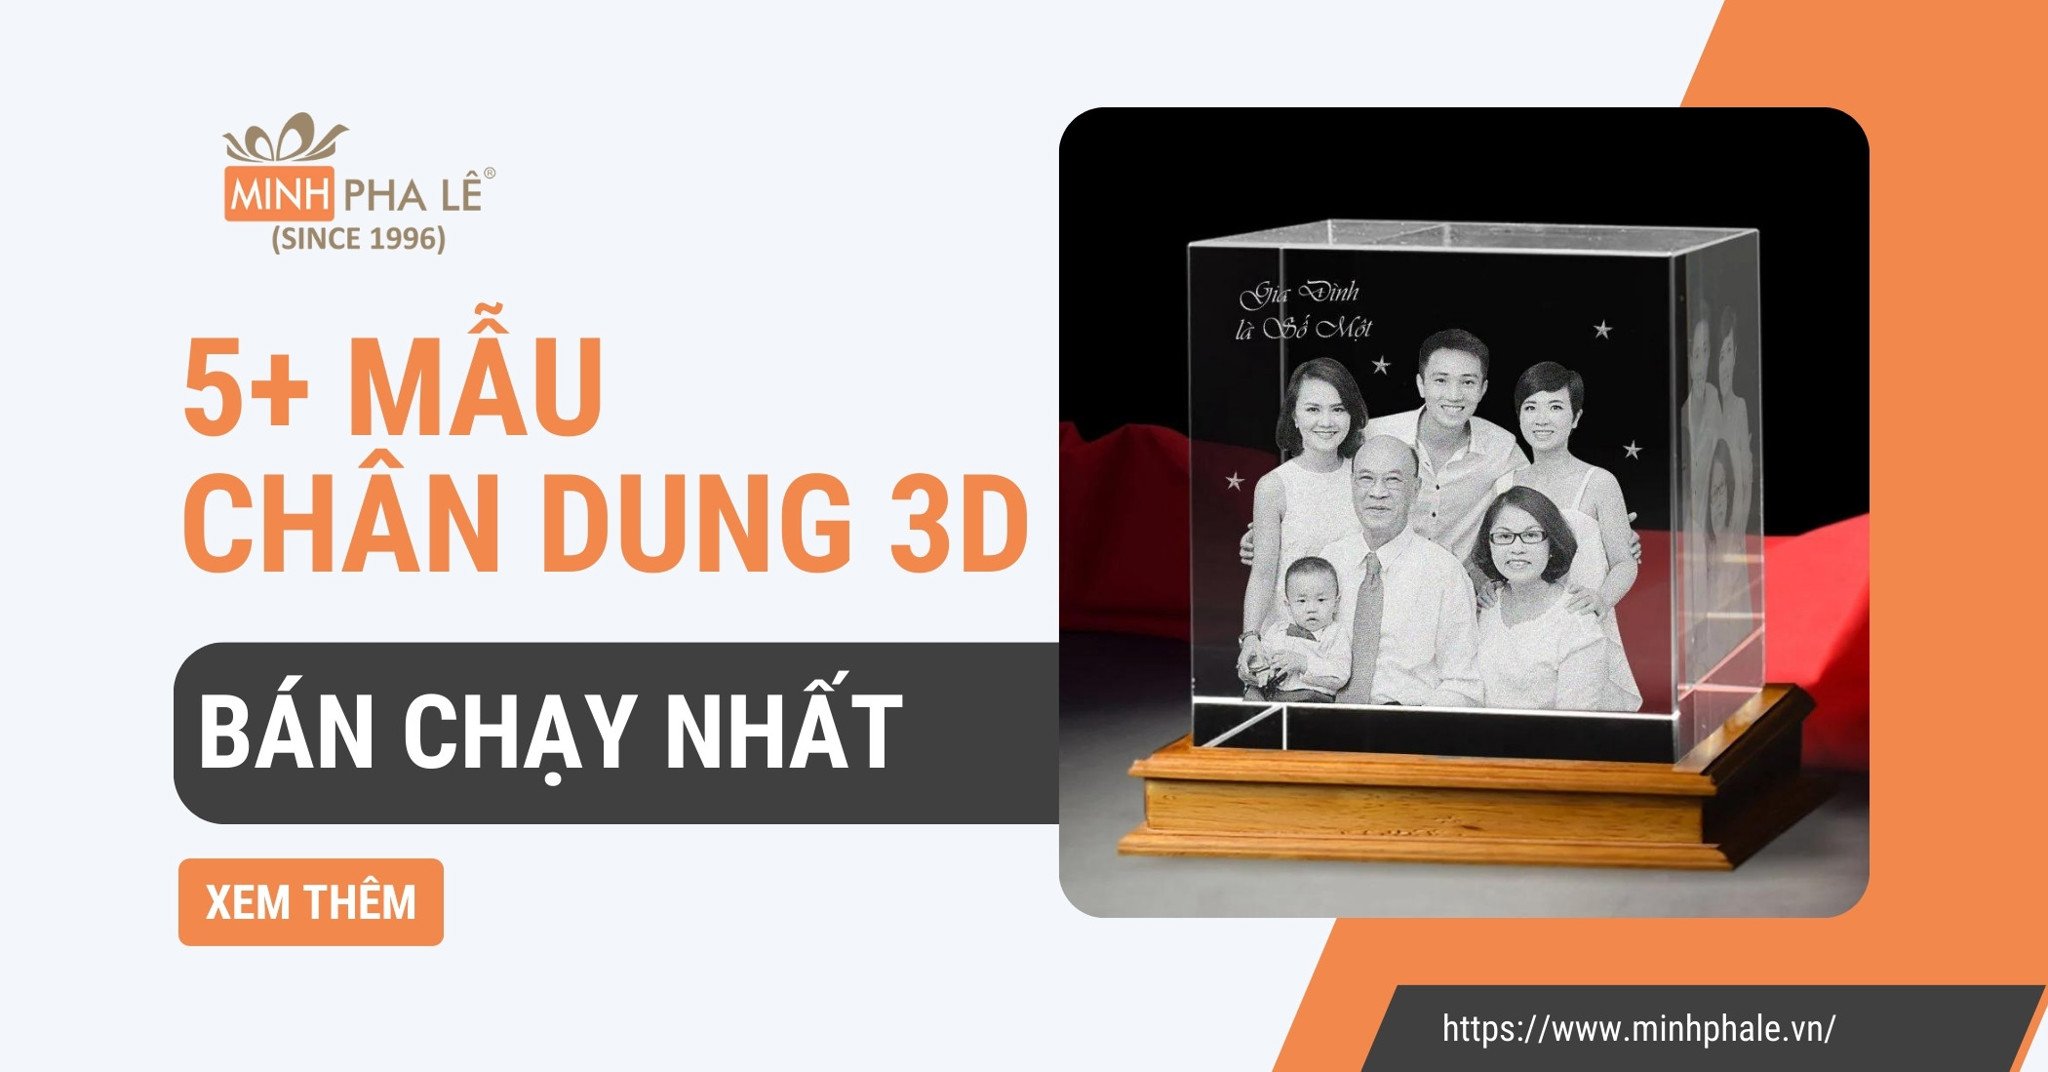 5+ Mẫu Chân Dung 3D Khối Pha Lê Được Lòng Khách Tại Minh Pha Lê